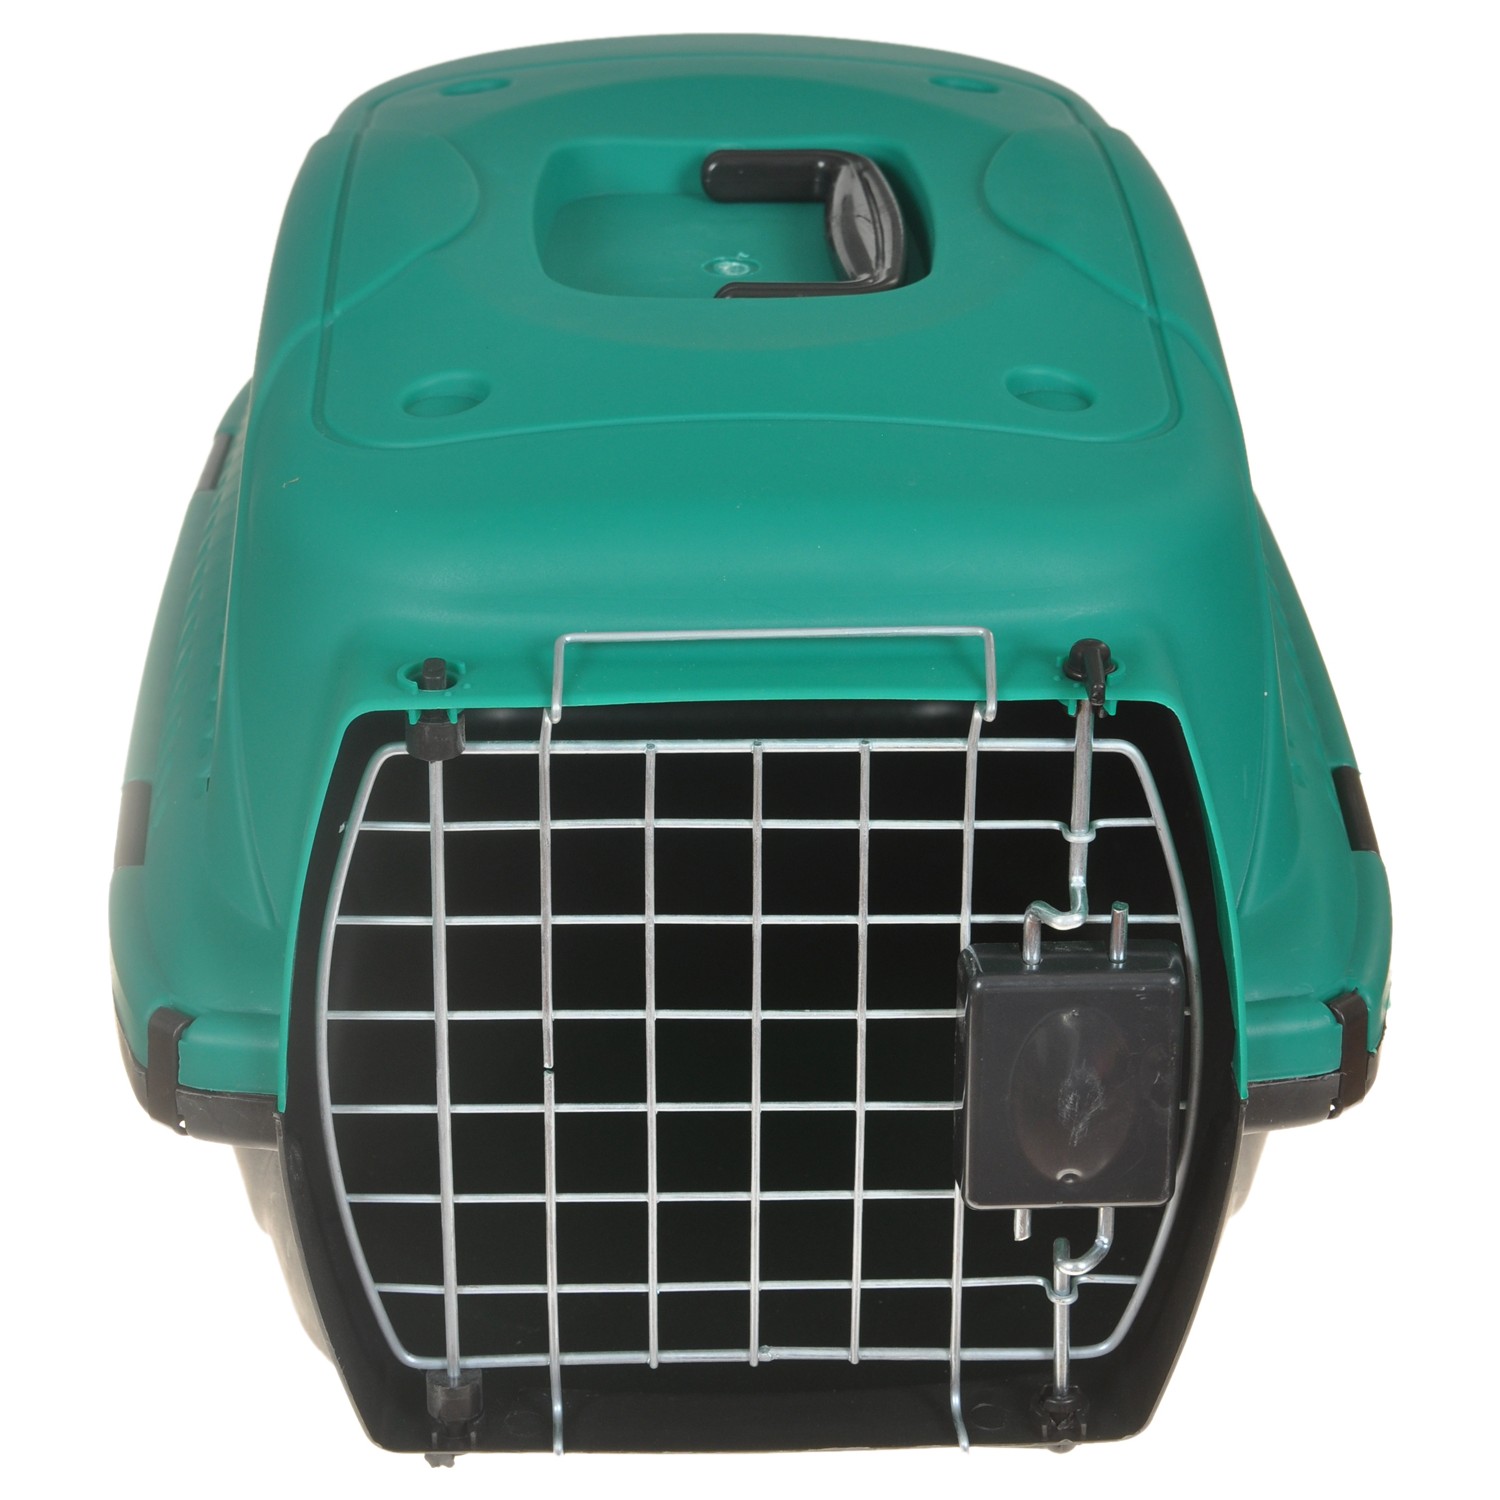 Yopigo Kedi Köpek Taşıma Kafesi Tel Kapılı Yeşil Fiyatı